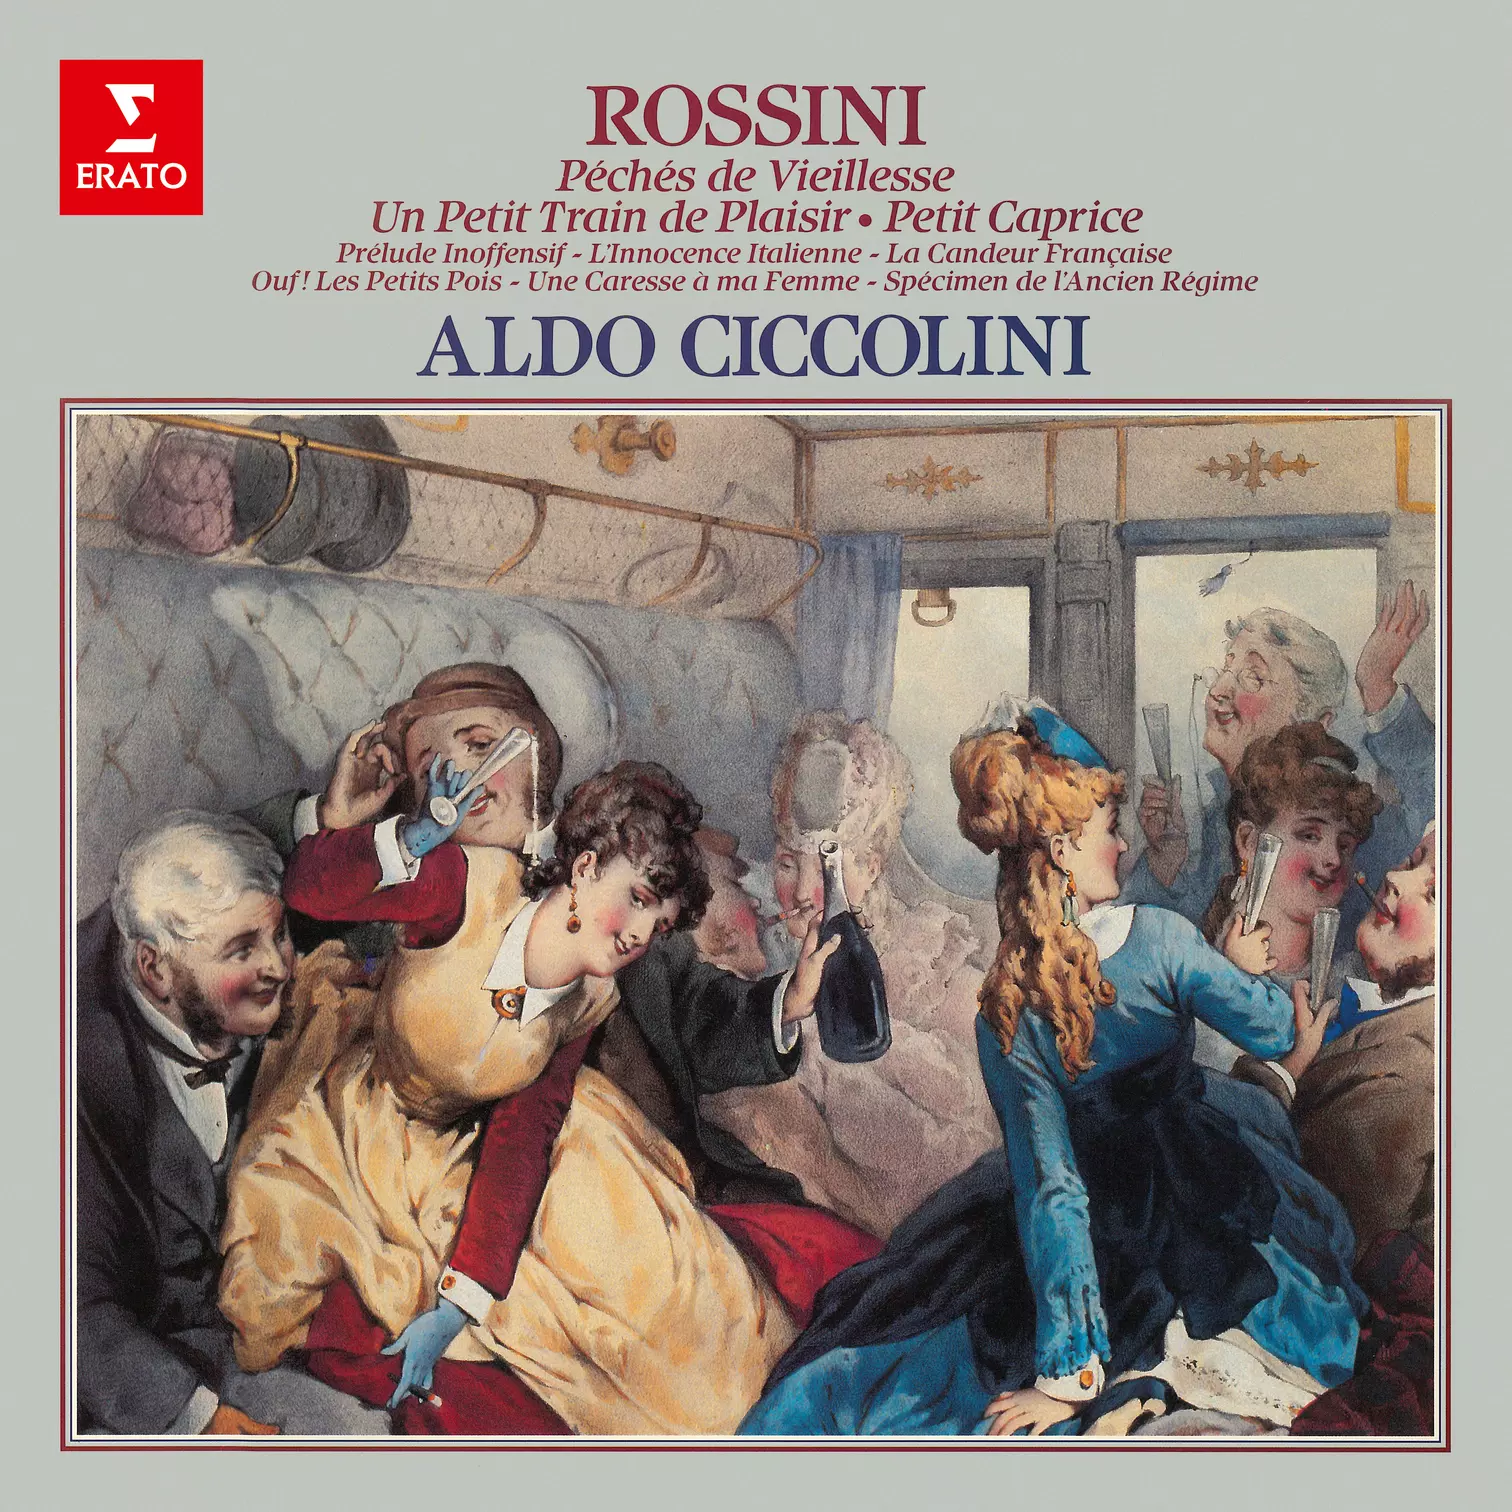 Rossini: Péchés de vieillesse